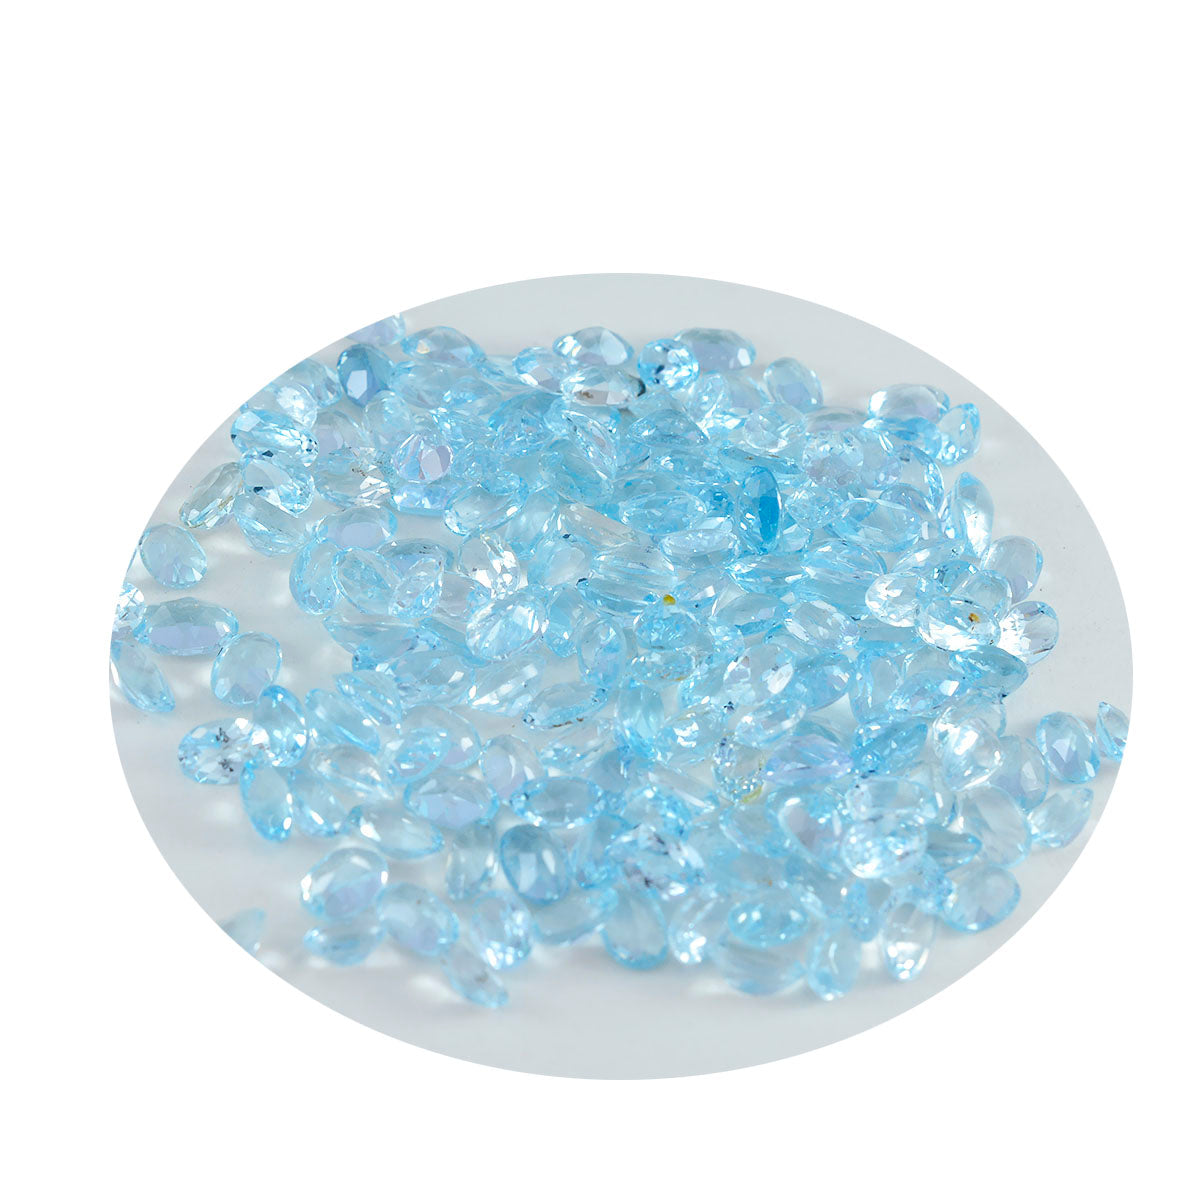 riyogems 1шт натуральный голубой топаз ограненный 3х5 мм овальной формы драгоценный камень качества ААА